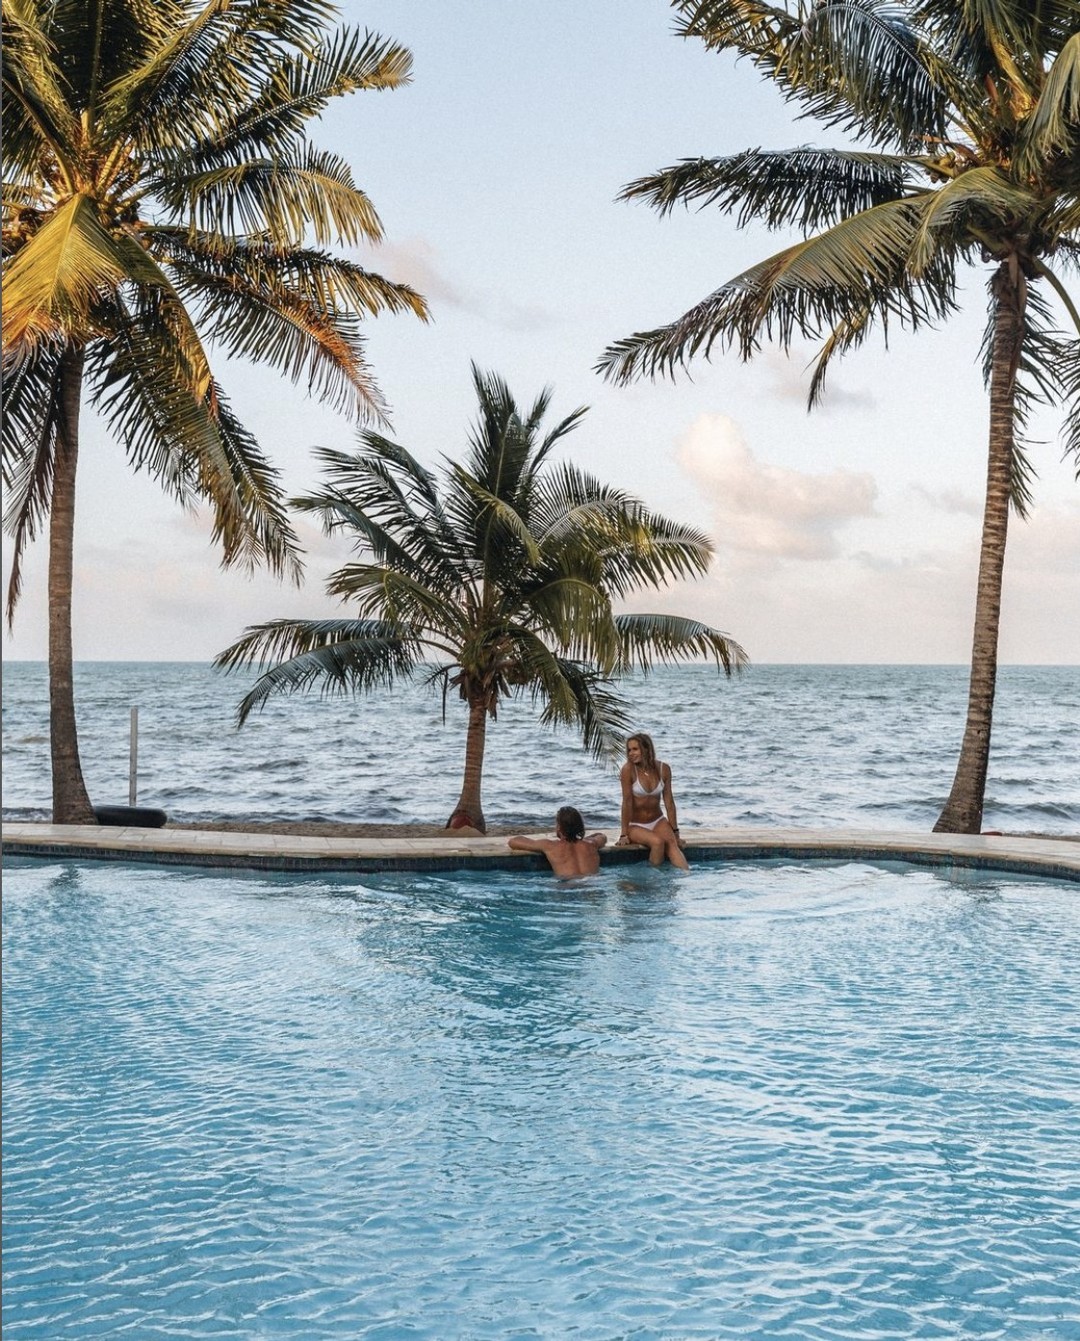 Die schwierigste Entscheidung, die Sie in Belize treffen müssen, ist die, ob Sie am Pool oder am Strand liegen wollen. Wofür entscheiden Sie sich? #travelbelize📸- @almond.beach.resort